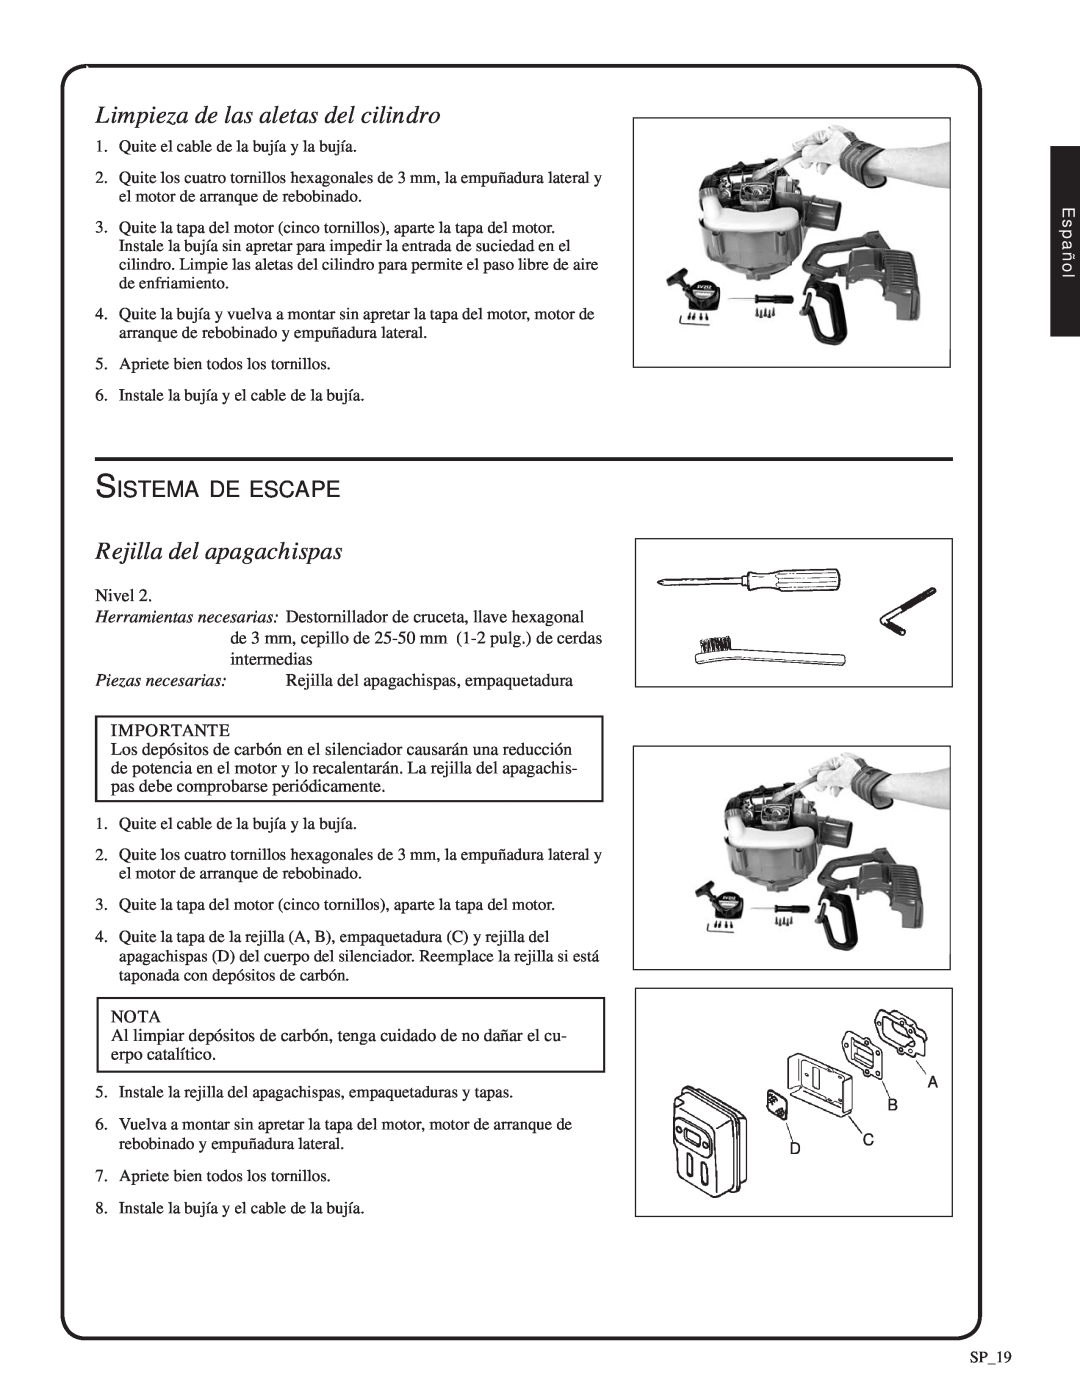 Shindaiwa 82052, SV212 manual Limpieza de las aletas del cilindro, Rejilla del apagachispas, Sistema de escape, Español 